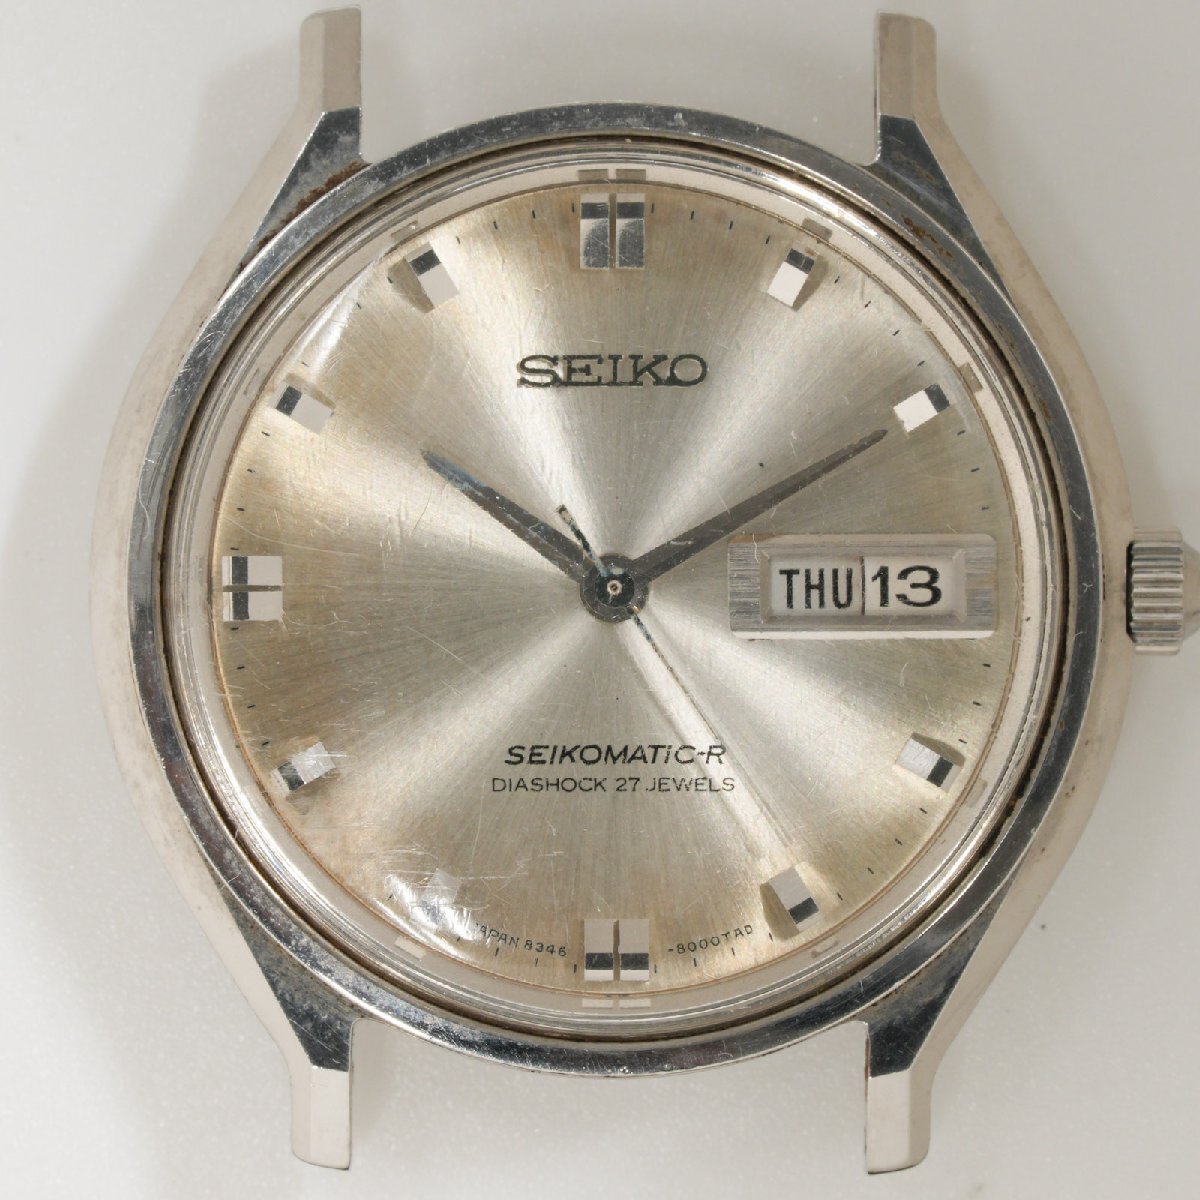 セイコー SEIKO 腕時計 SEIKOMATIC-R 8346-8000 デイデイト 本体のみ 自動巻 中古 動作品 [質イコー]の画像1